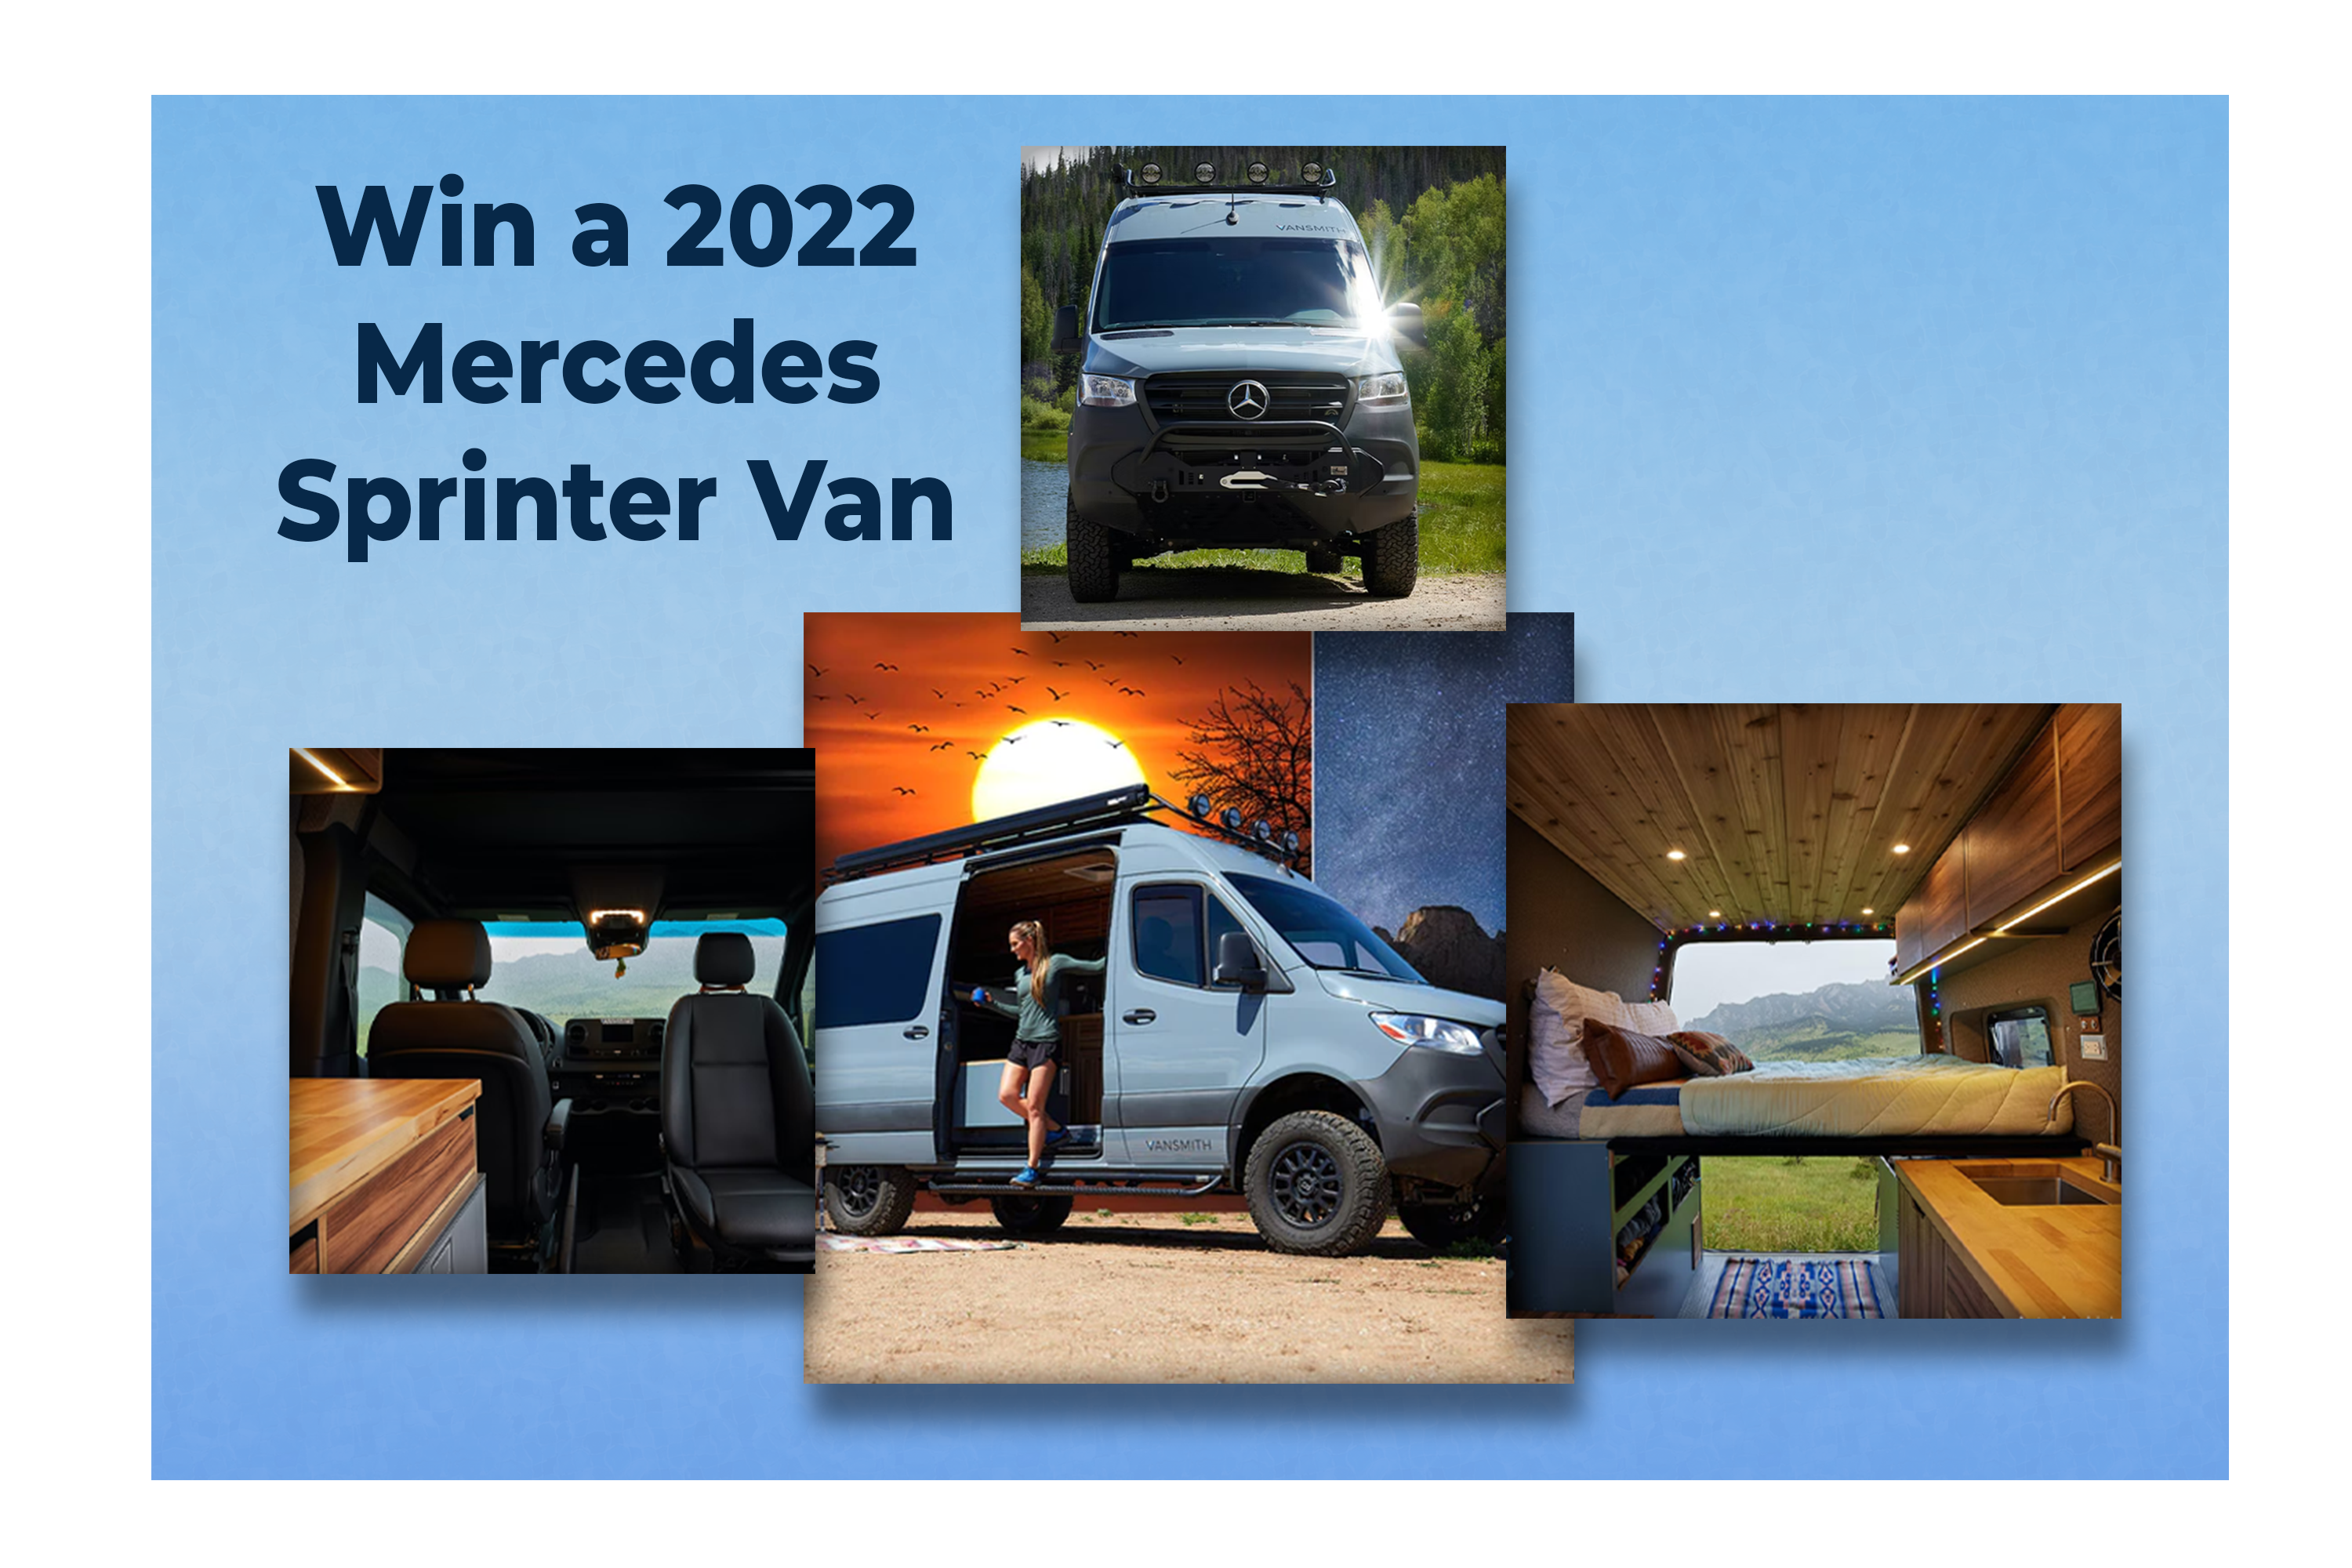 Win a 2022 Mercedes Sprinter Van